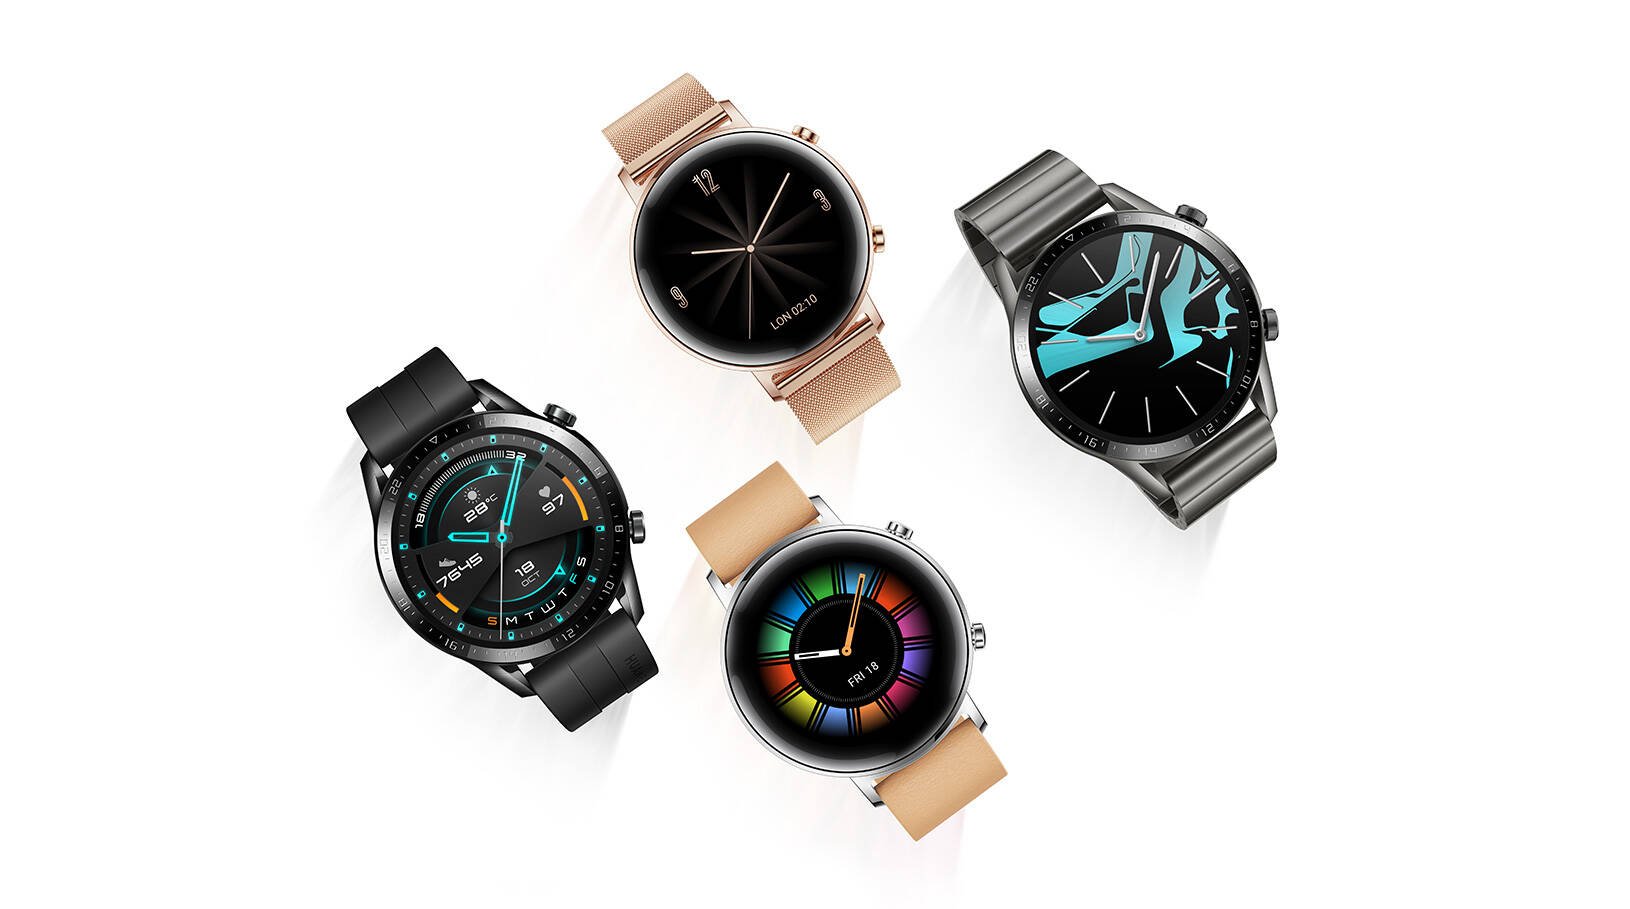 Relógio Huawei Watch GT 2 e fones FreeBuds 3 estreiam no Brasil